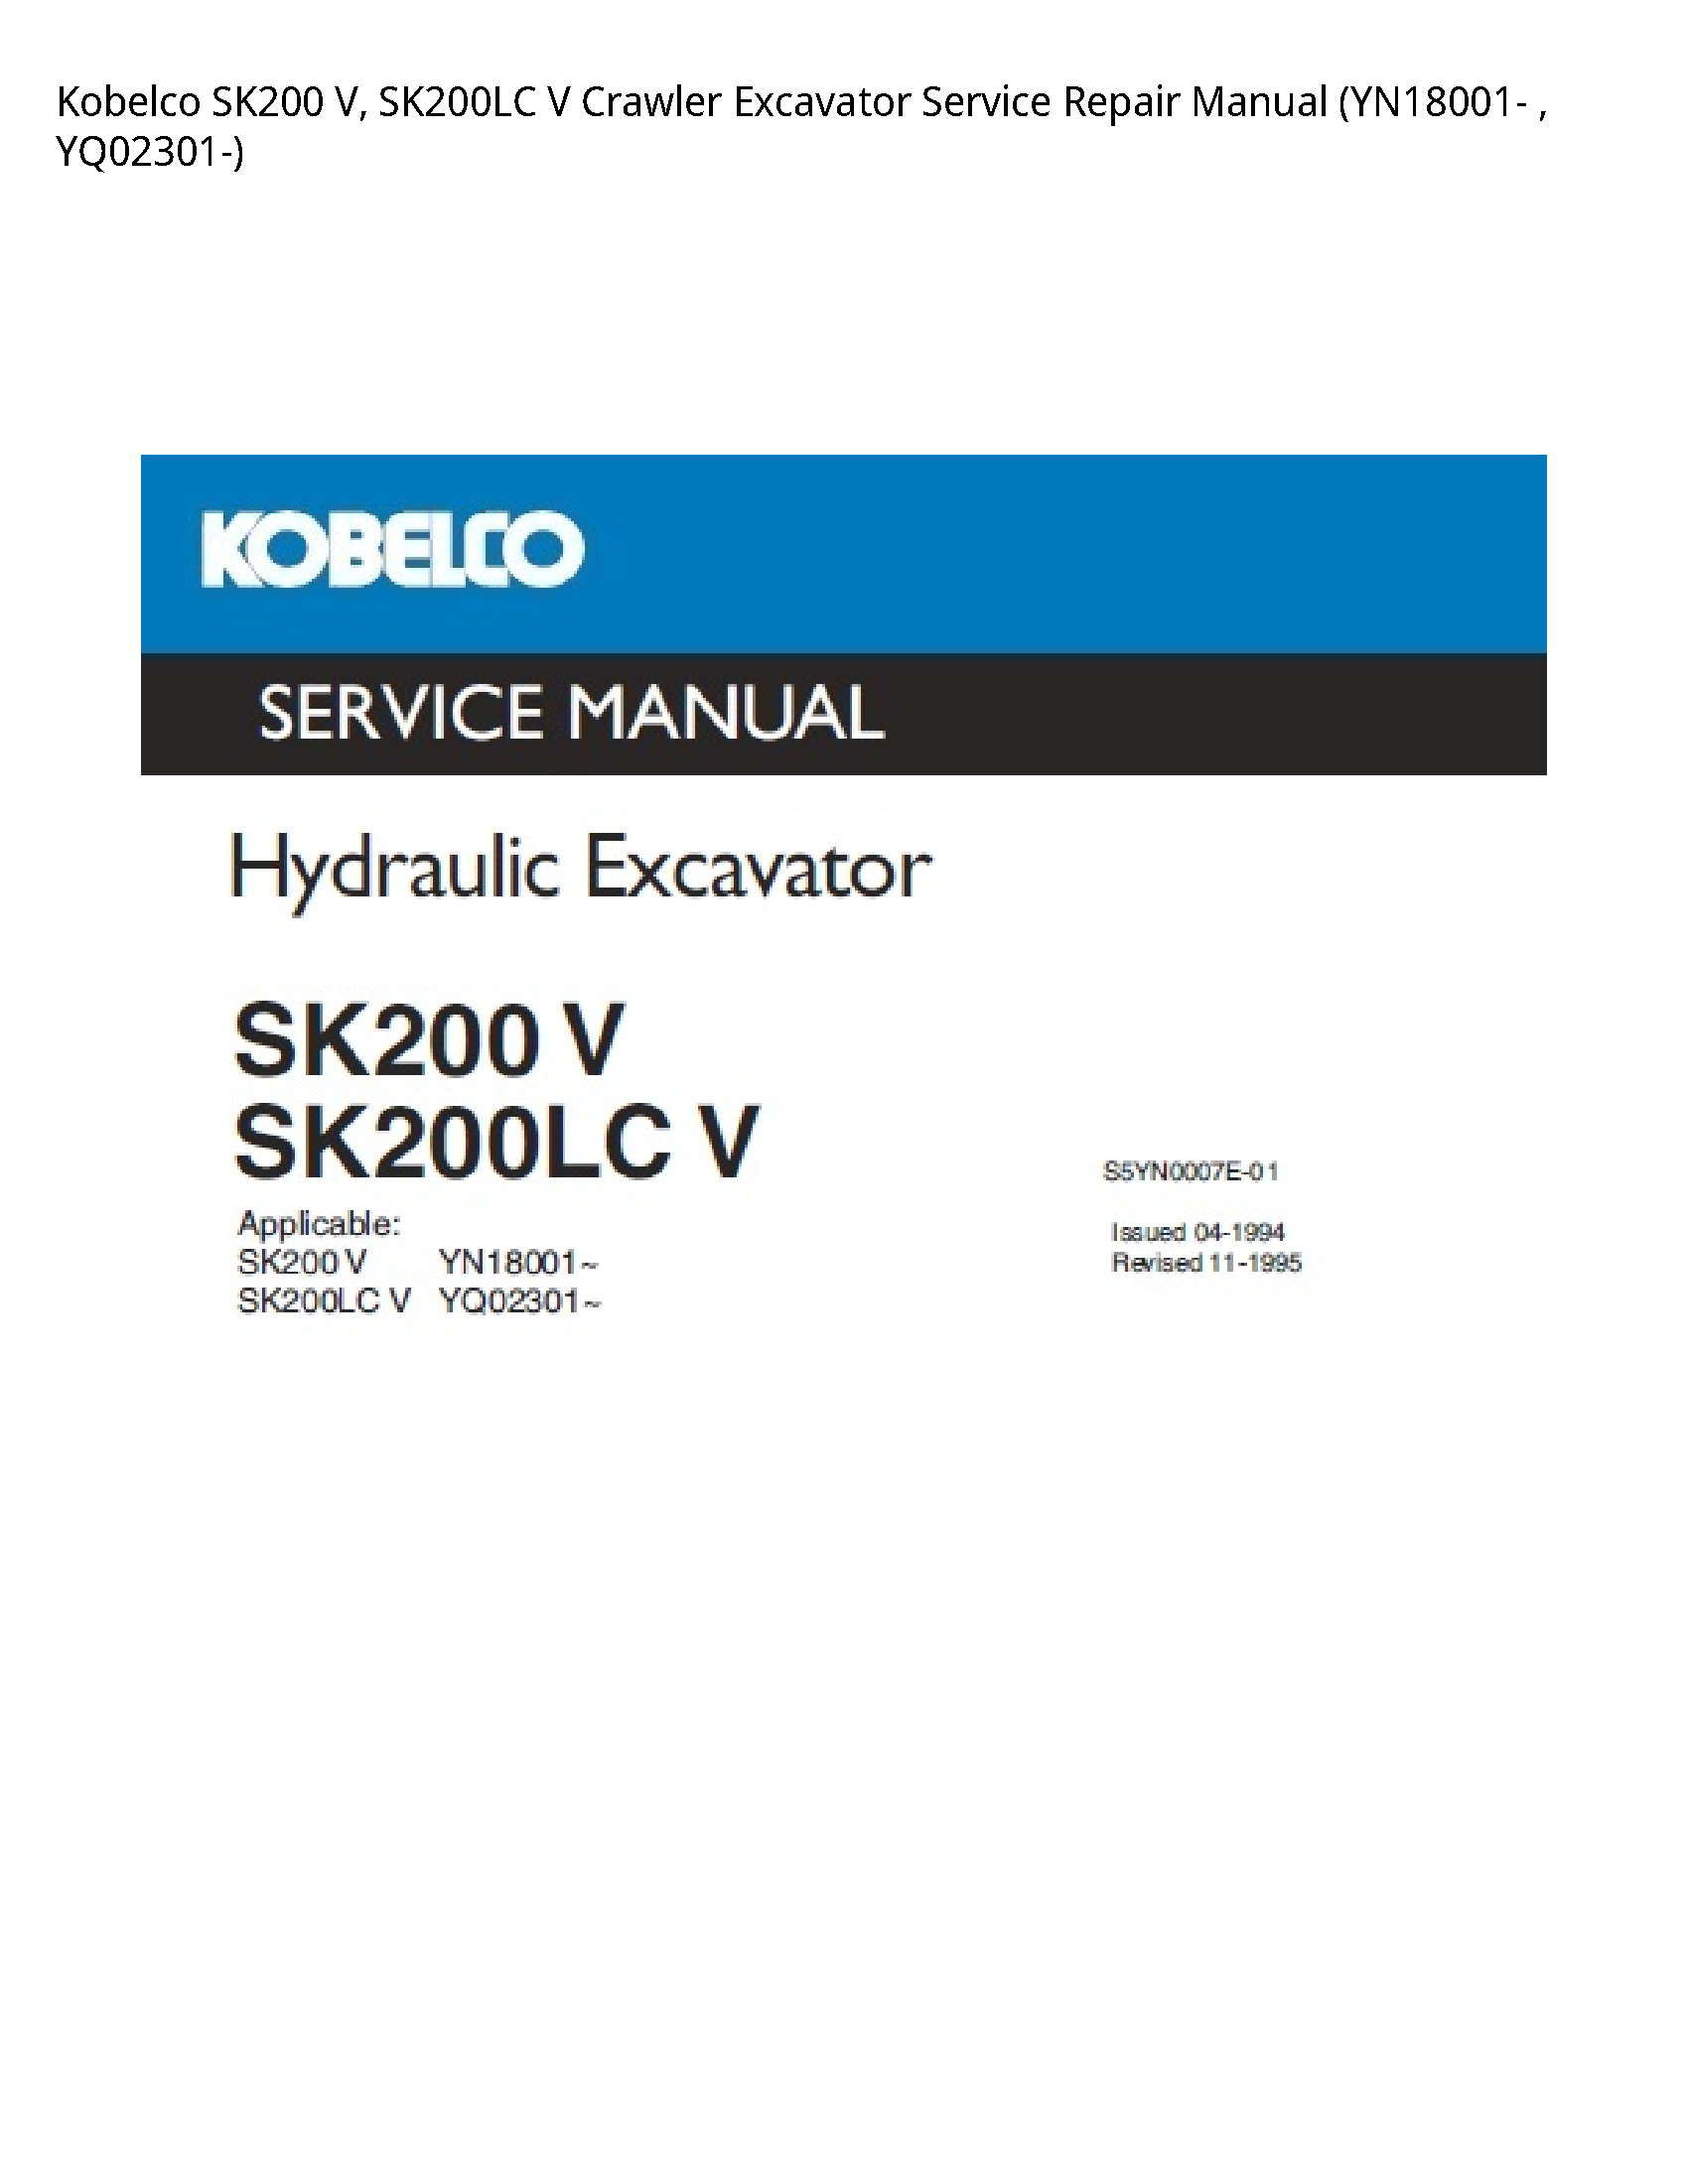 Kobelco SK200 V manual